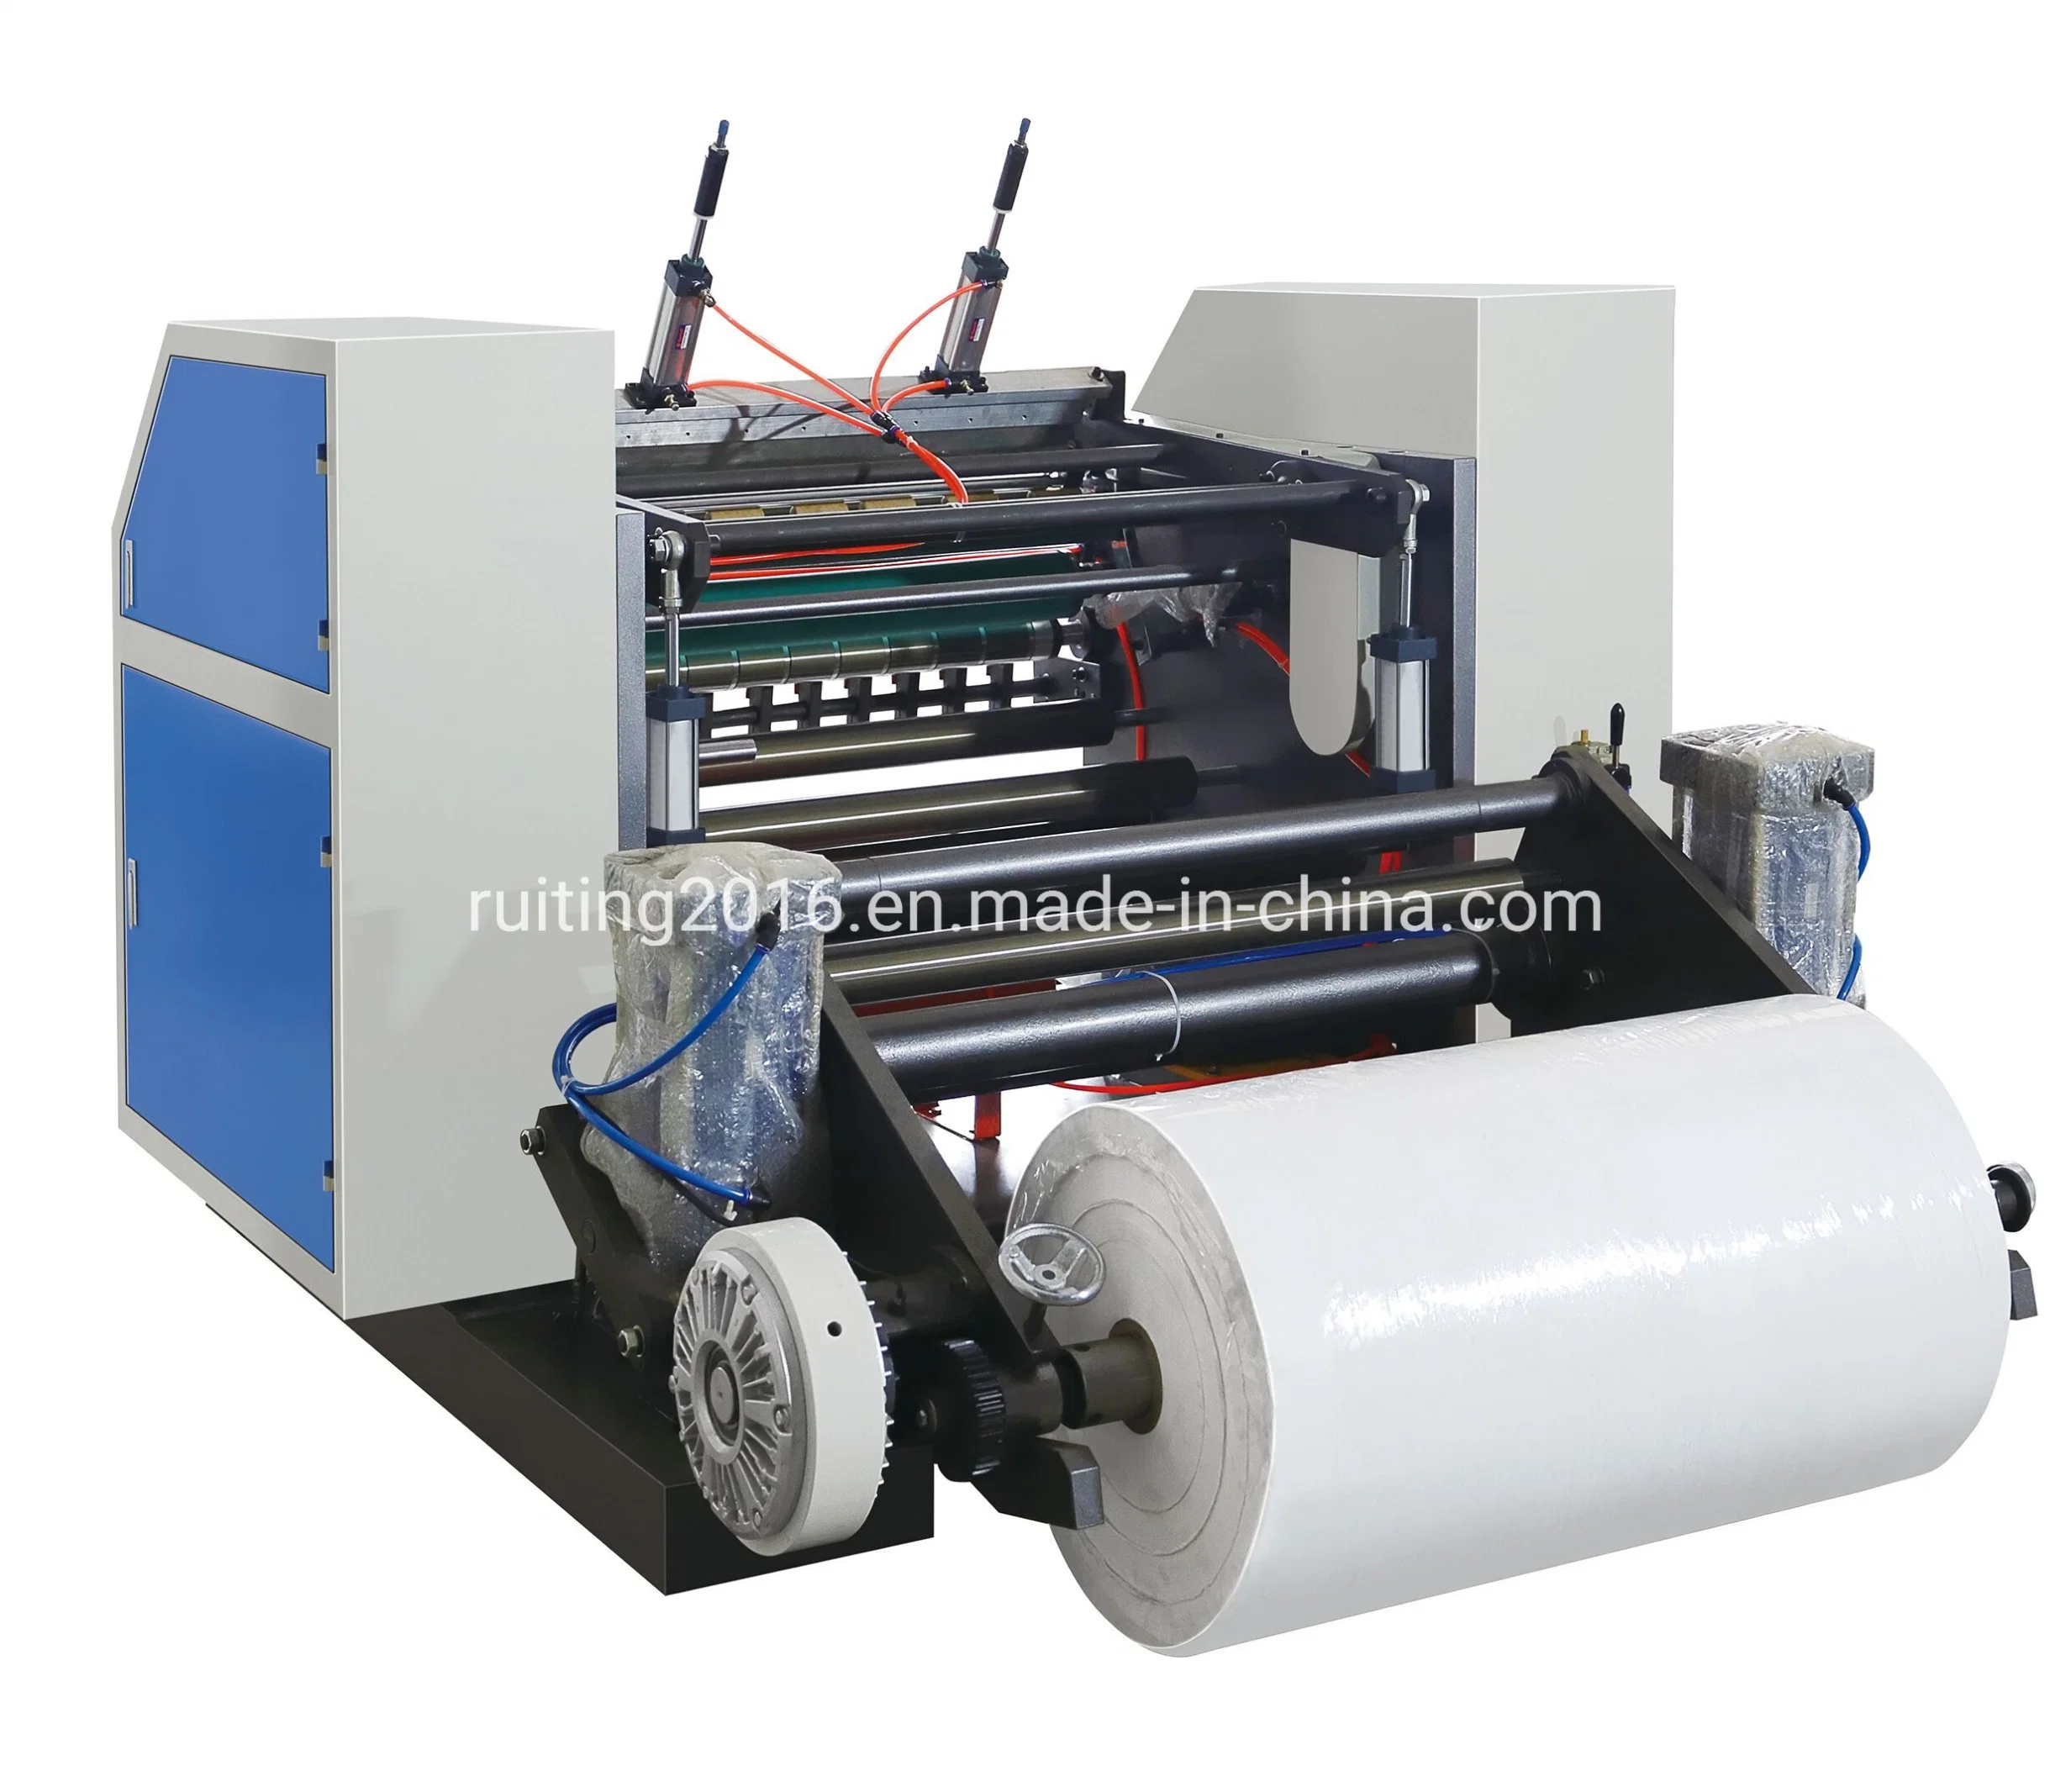 Registro de los cajeros automáticos de rebobinado de rollos de papel de la máquina cortadora longitudinal con Coreless retroceder